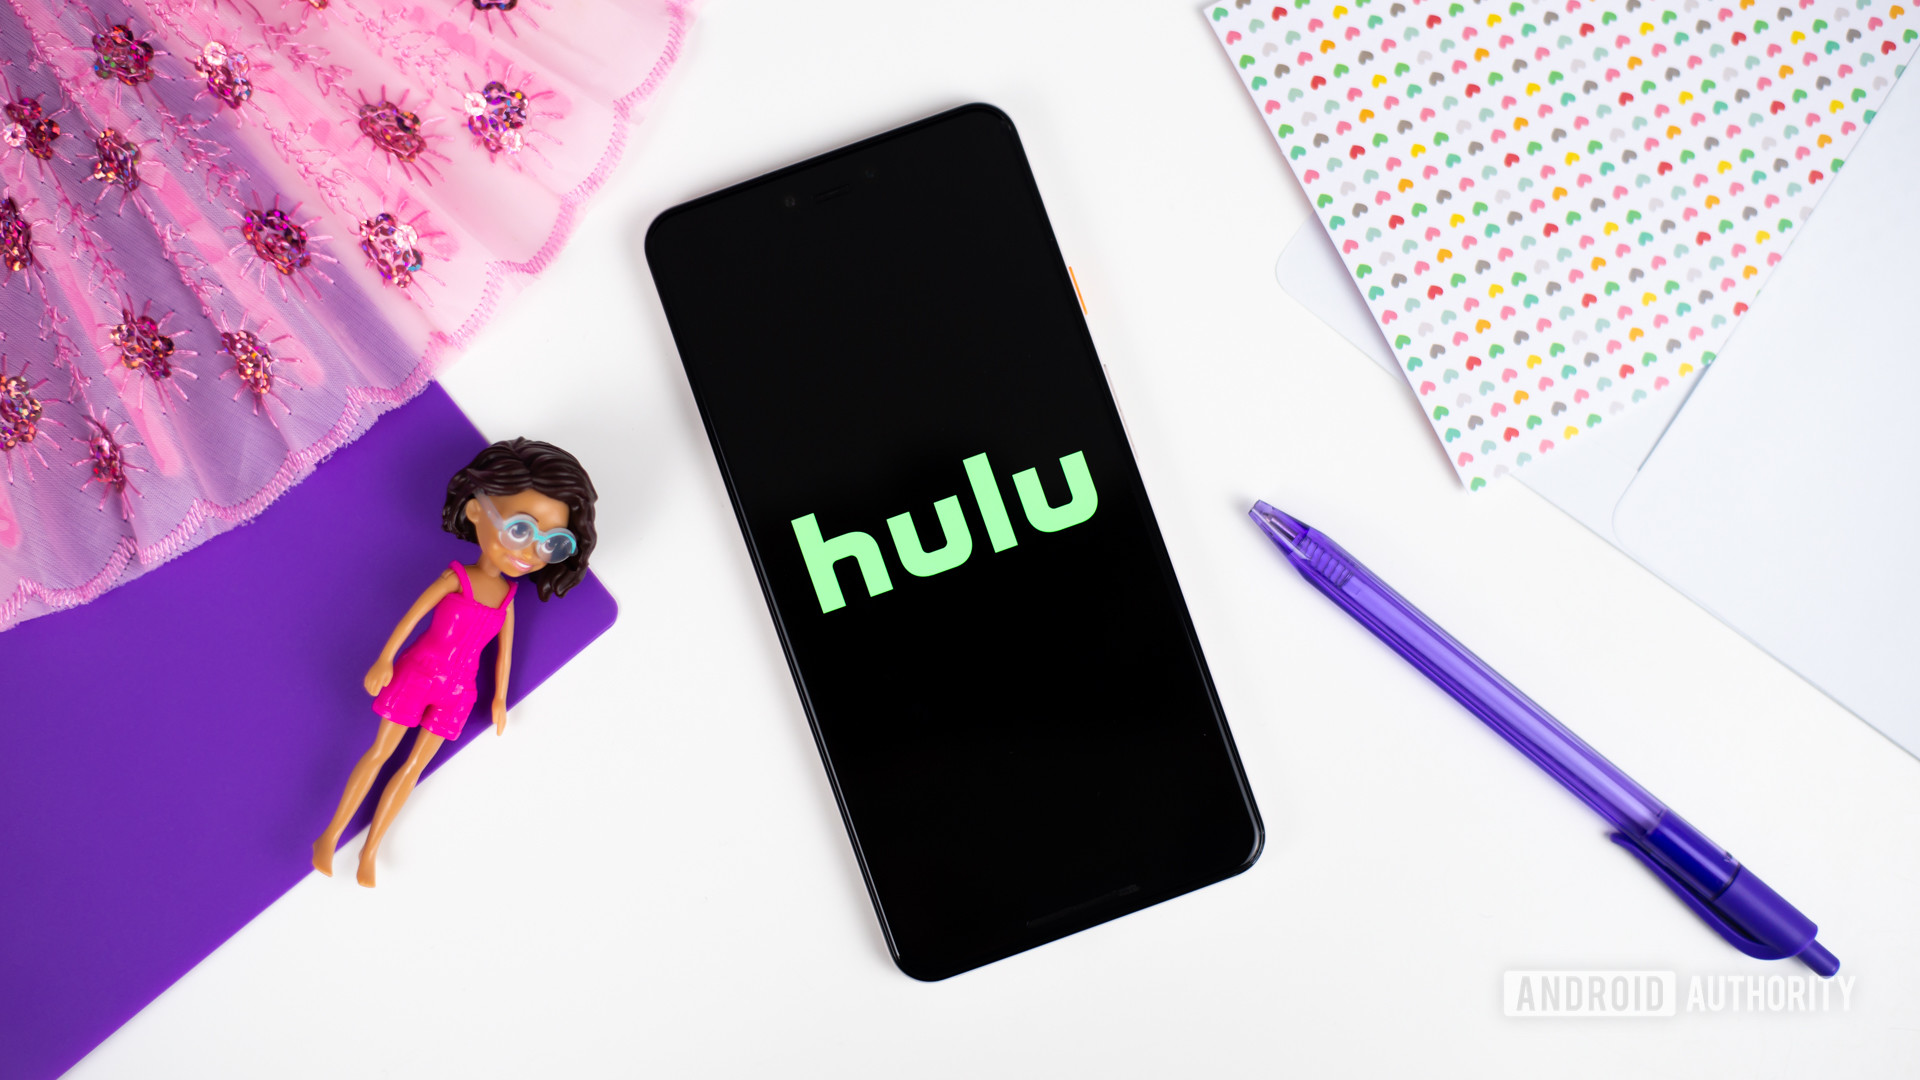 Hulu gratuito está aquí para los suscriptores de T-Mobile, pero hay inconvenientes